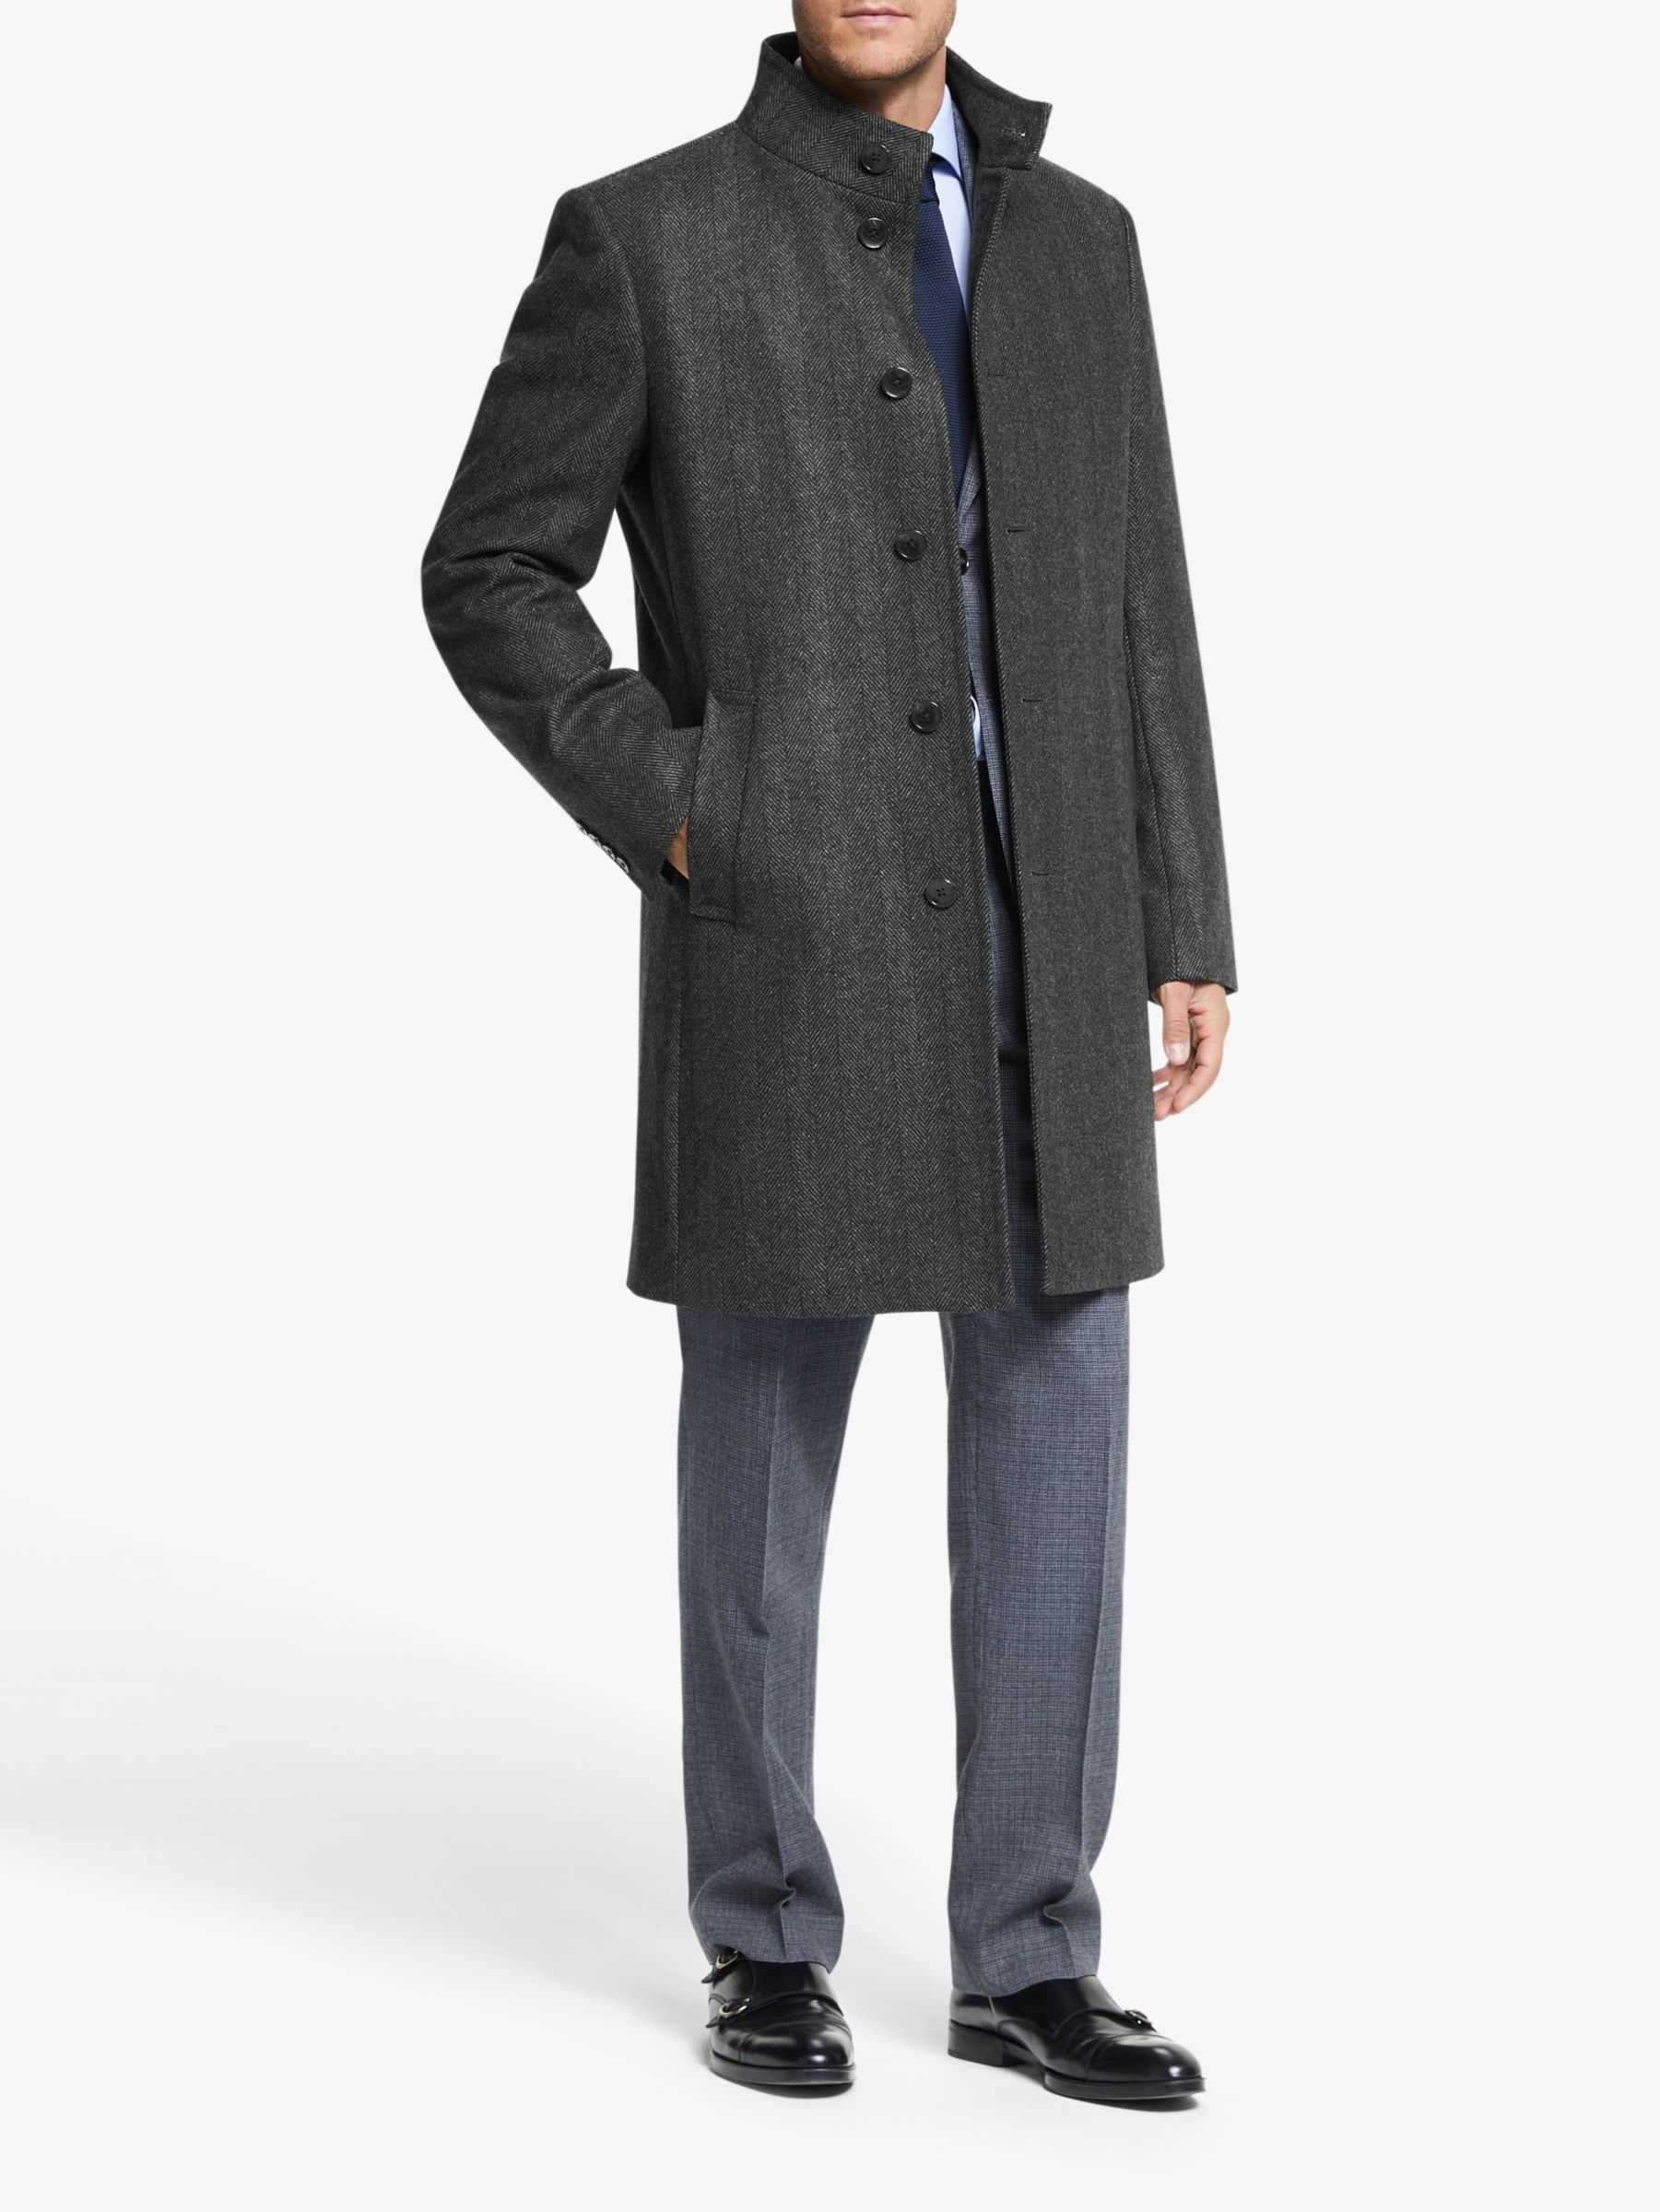 Best Winter Coats For Men | John Lewis & Partners